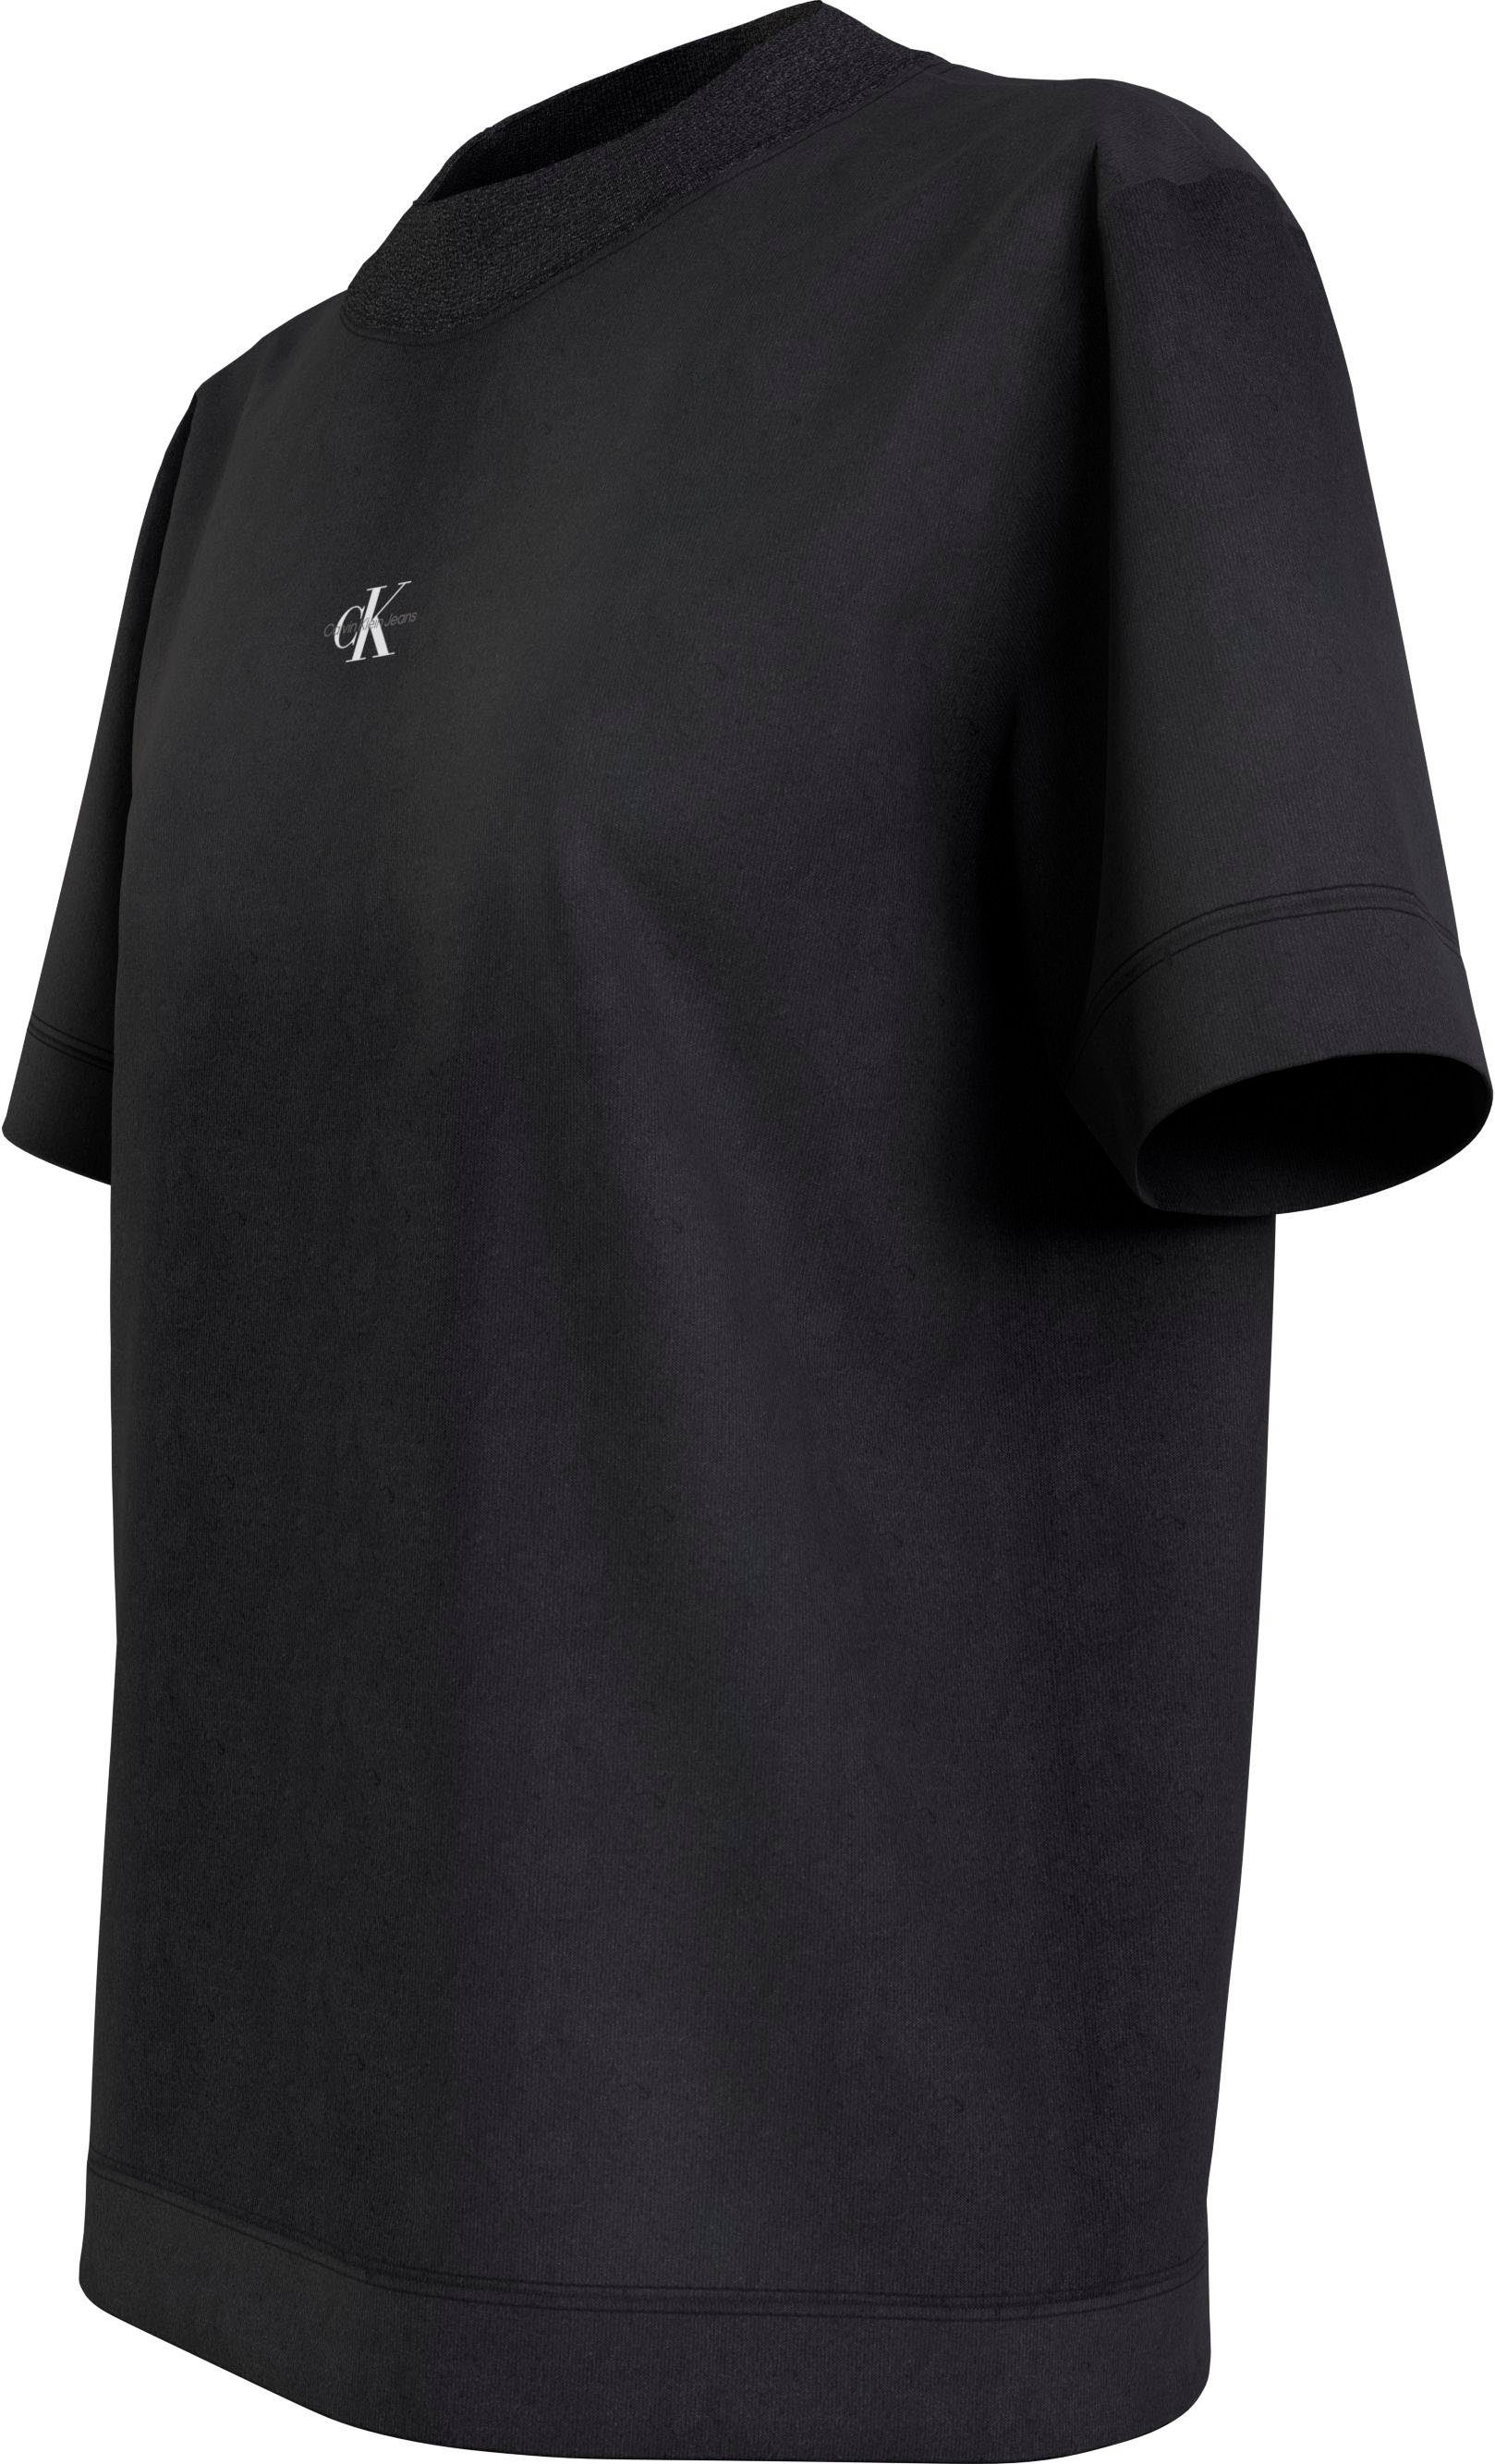 RIB WASH Ck Black Klein Baumwolle BOYFRIEND reiner T-Shirt Jeans MIX Calvin aus TEE